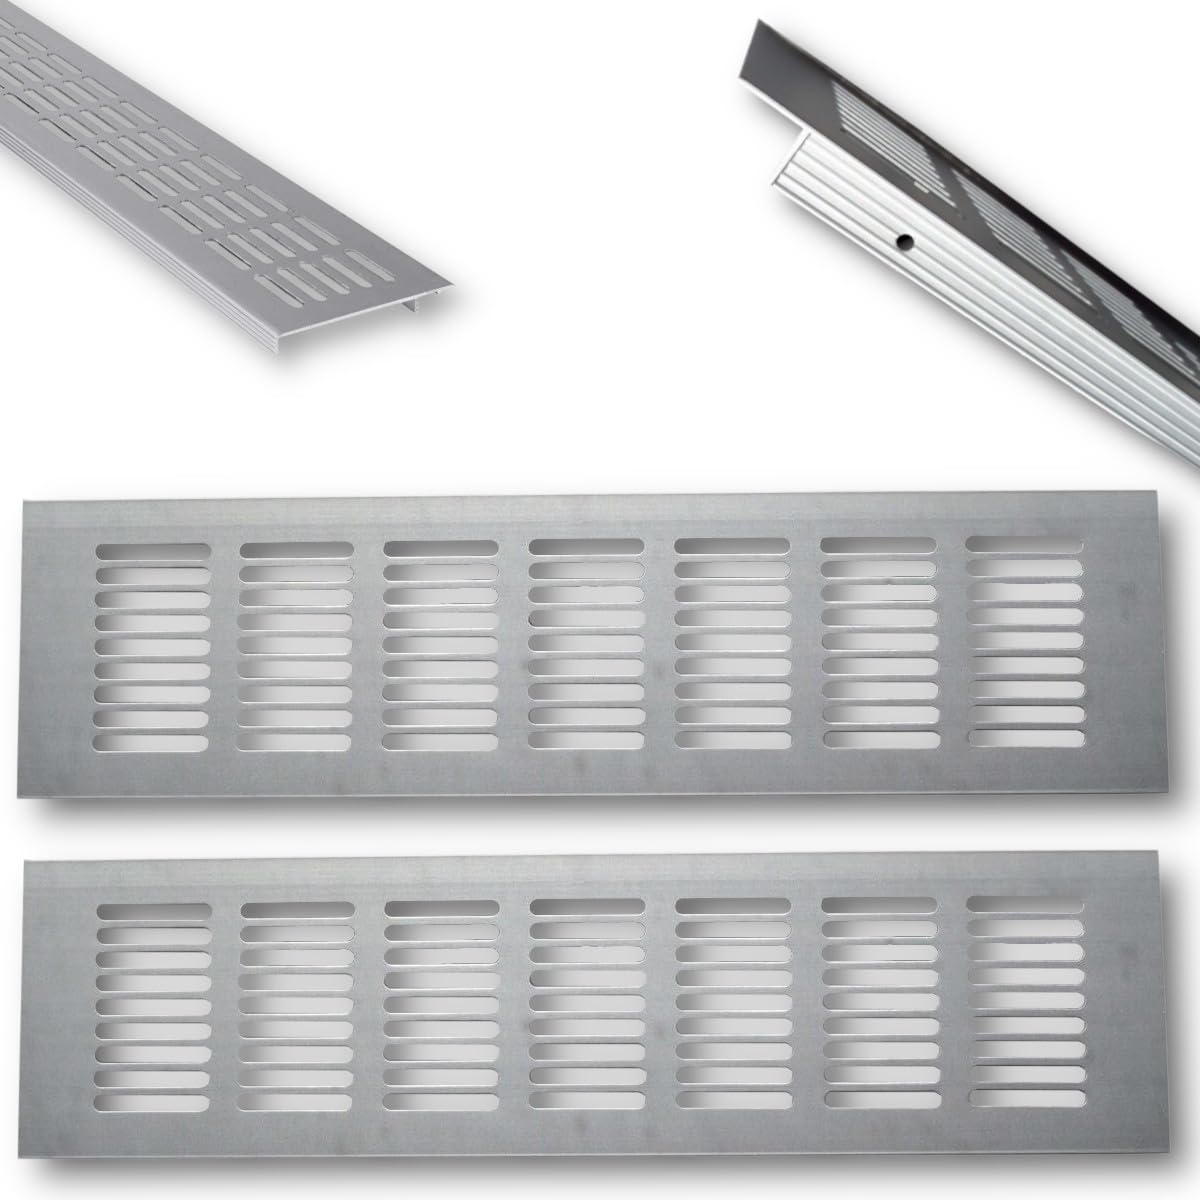 Euro Tische 2x Aluminium Lüftungsgitter für Eine Ideale Belüftung, Belüftungsgitter für Küche, Bad, Toilette, Garage und Wohnzimmer, Abluftgitter 60 x 8 x 1.2cm